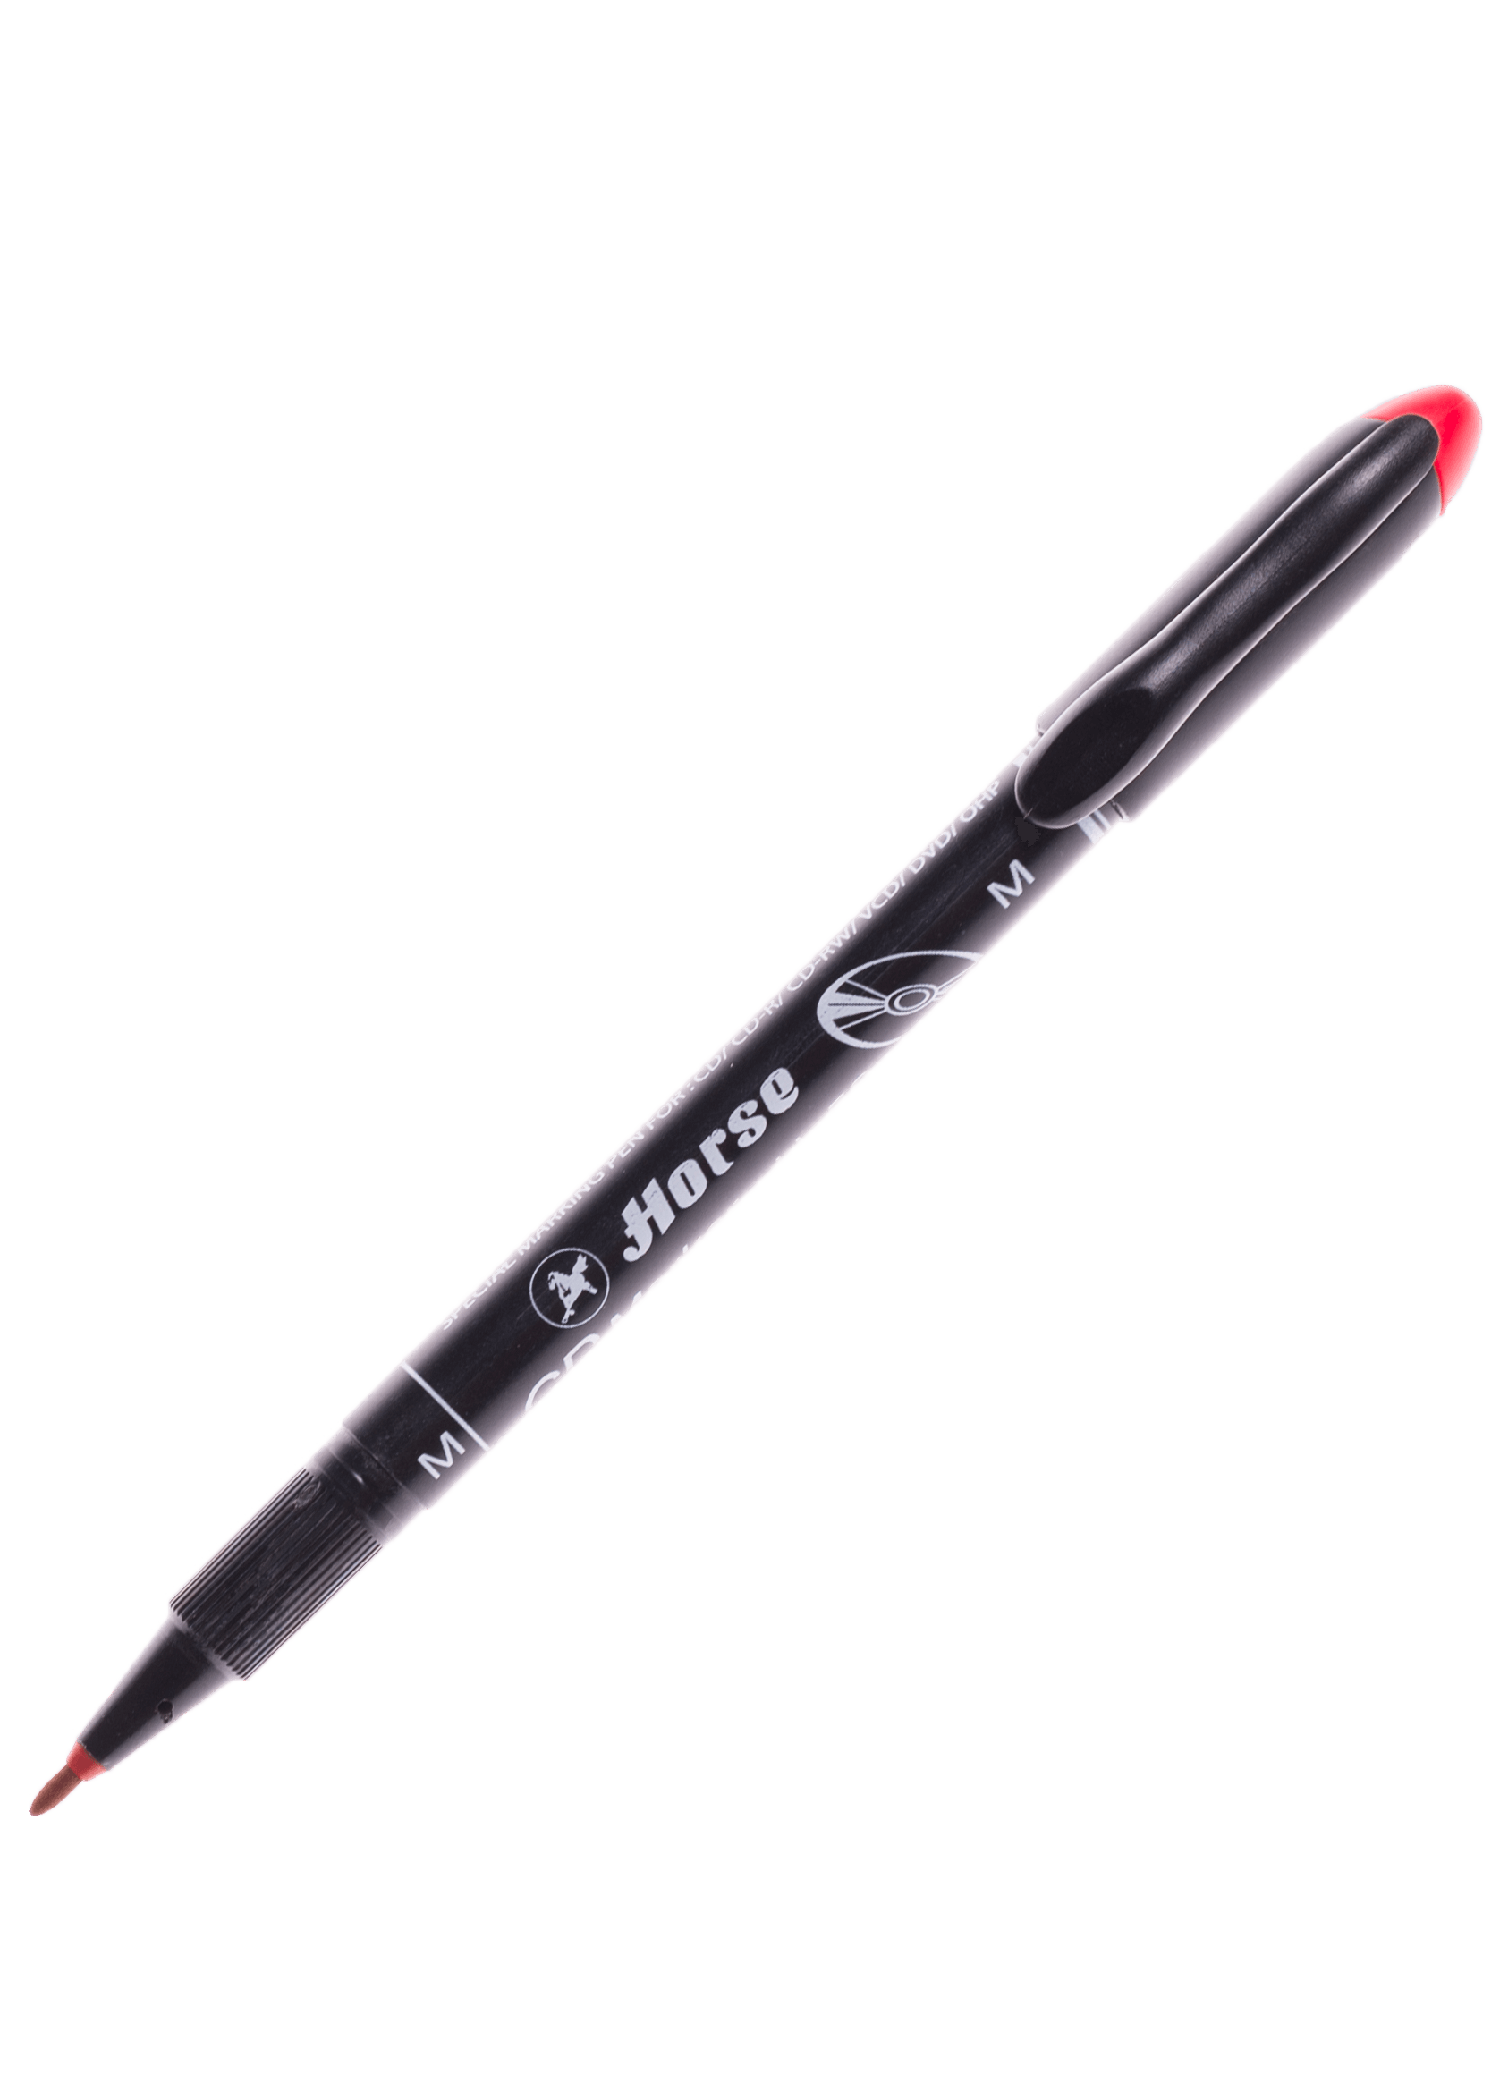 ปากกาเขียน CD ลบไม่ได้ ตราม้า H-52 (M) สีแดง 1.0 มม.